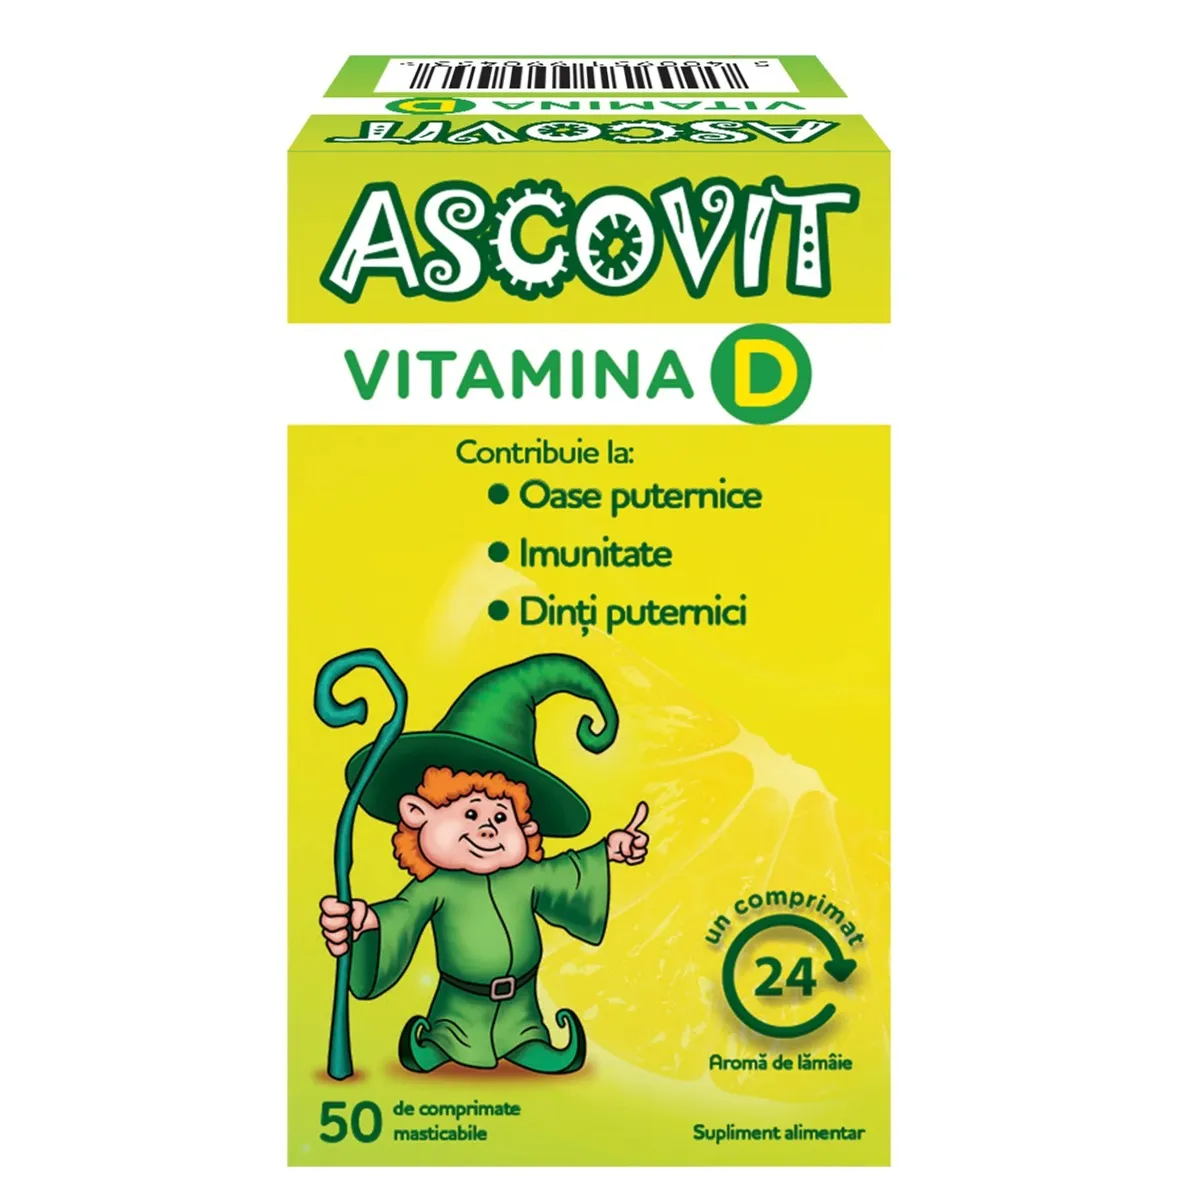 Vitamina D, 50 comprimate masticabile, Ascovit